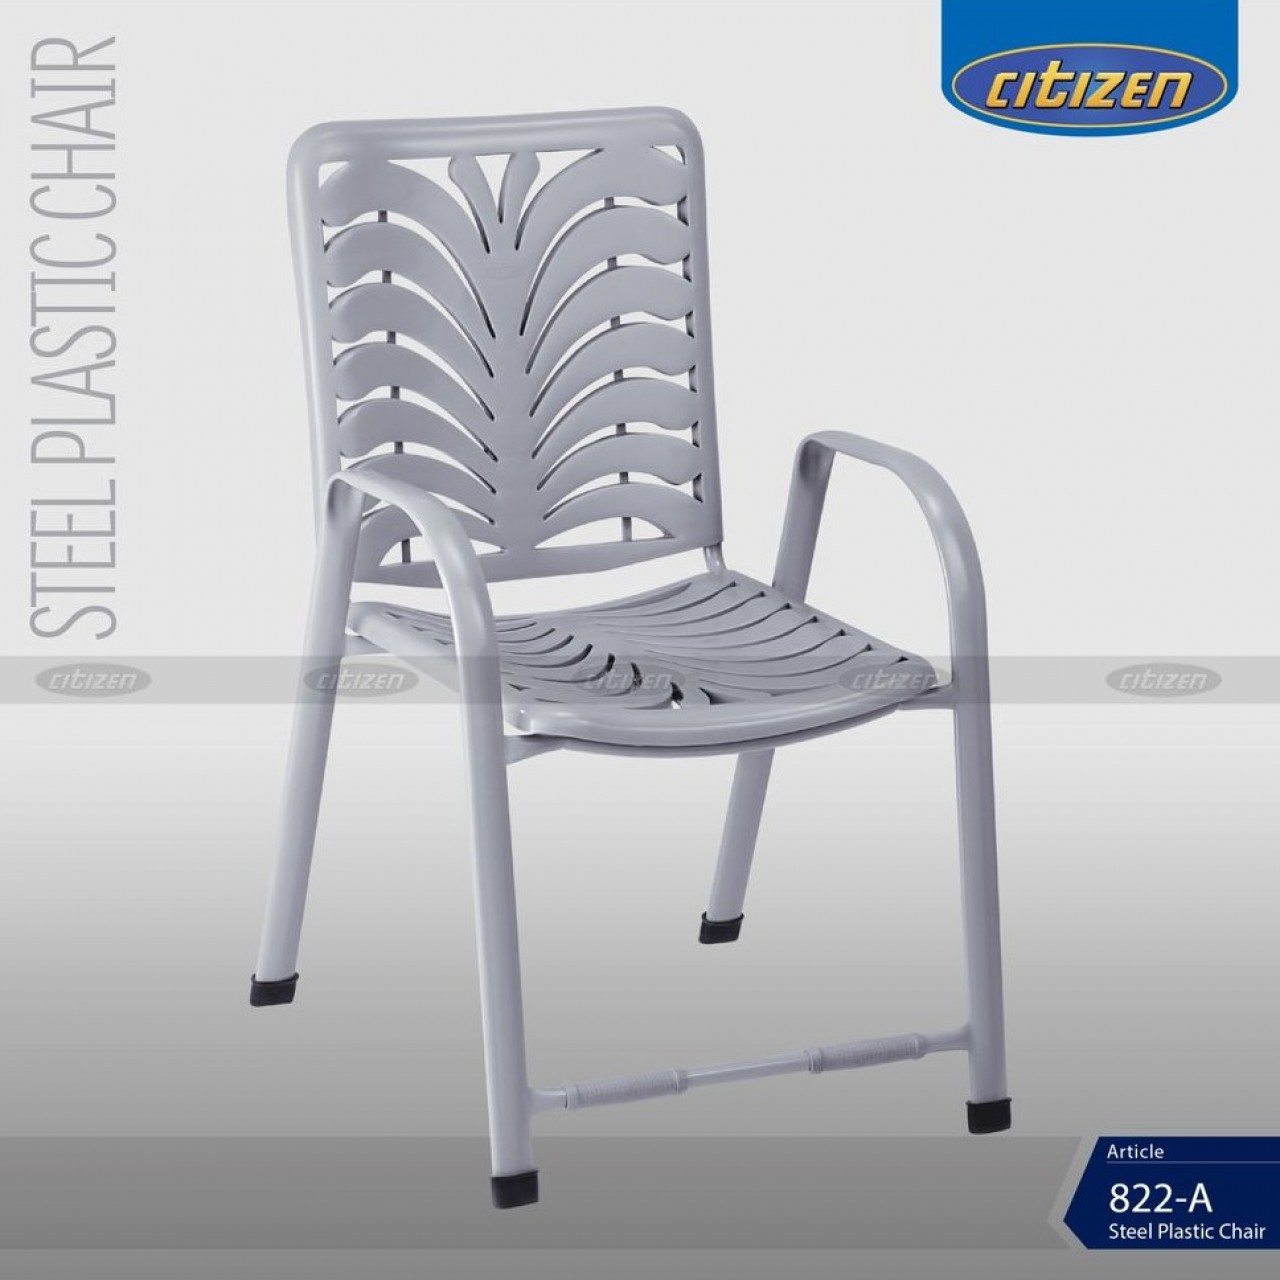 Citizen 822-A Steel & Plastic Chair - Indoor & Outdoor Furniture